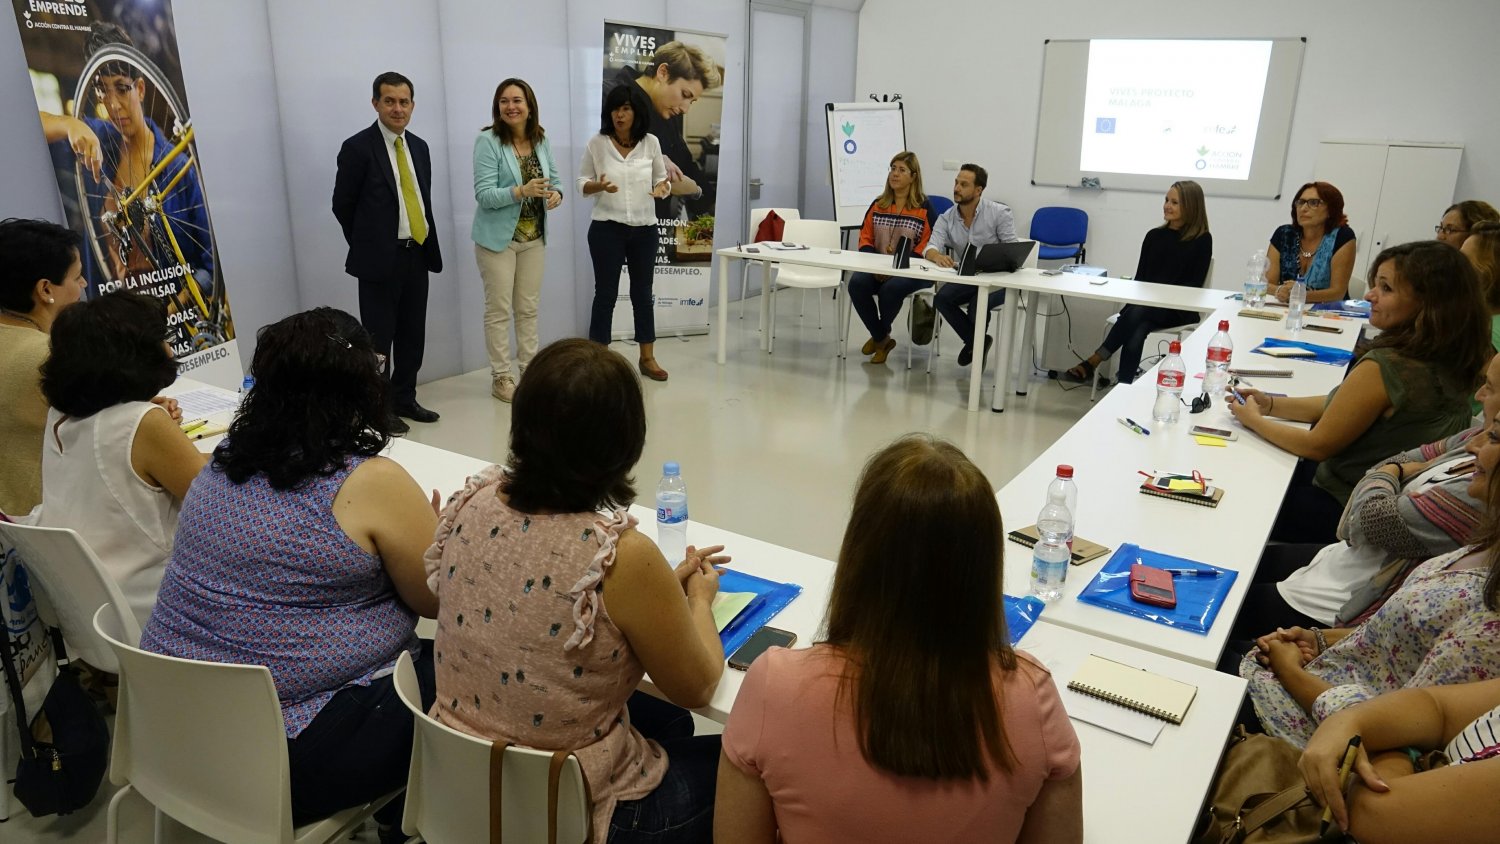 Málaga y Fundación Contra el Hambre desarrollarán programas de apoyo para las personas más desfavorecidas